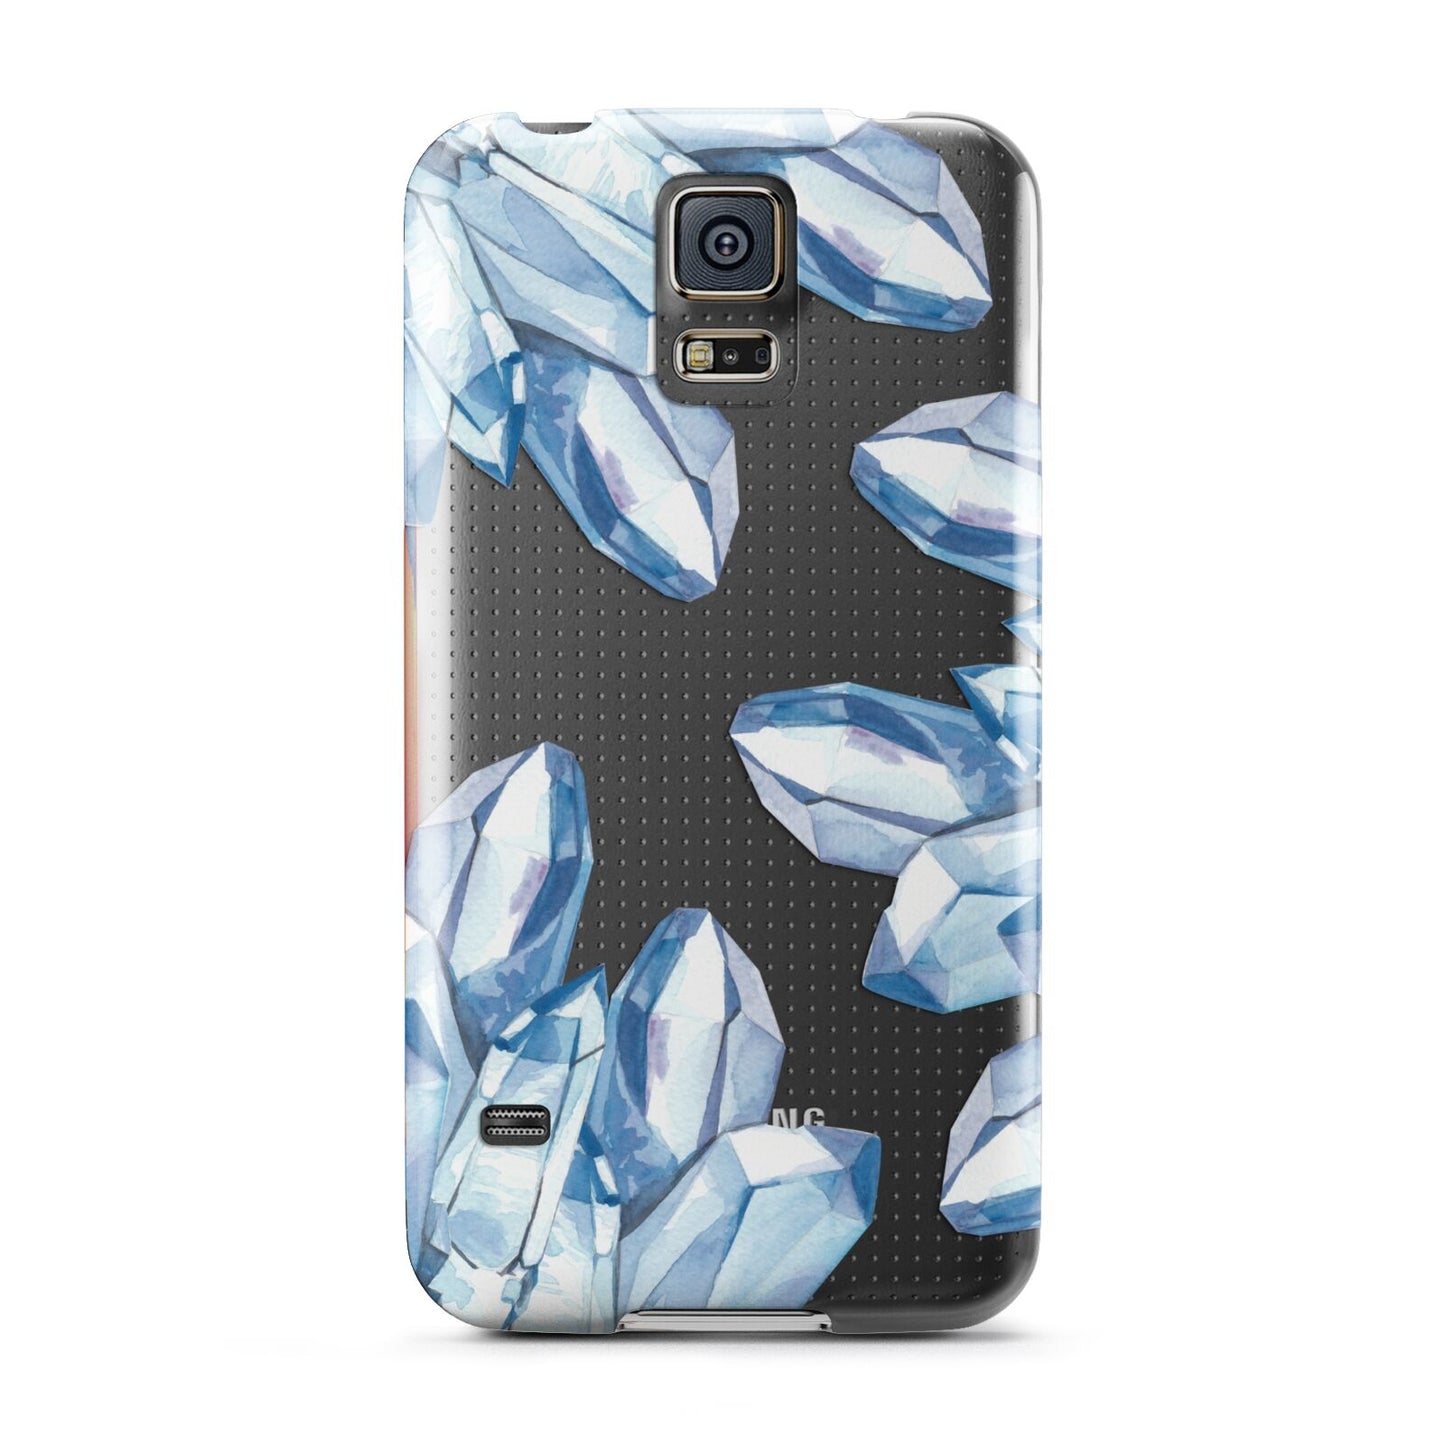 Blue Crystals Samsung Galaxy S5 Case